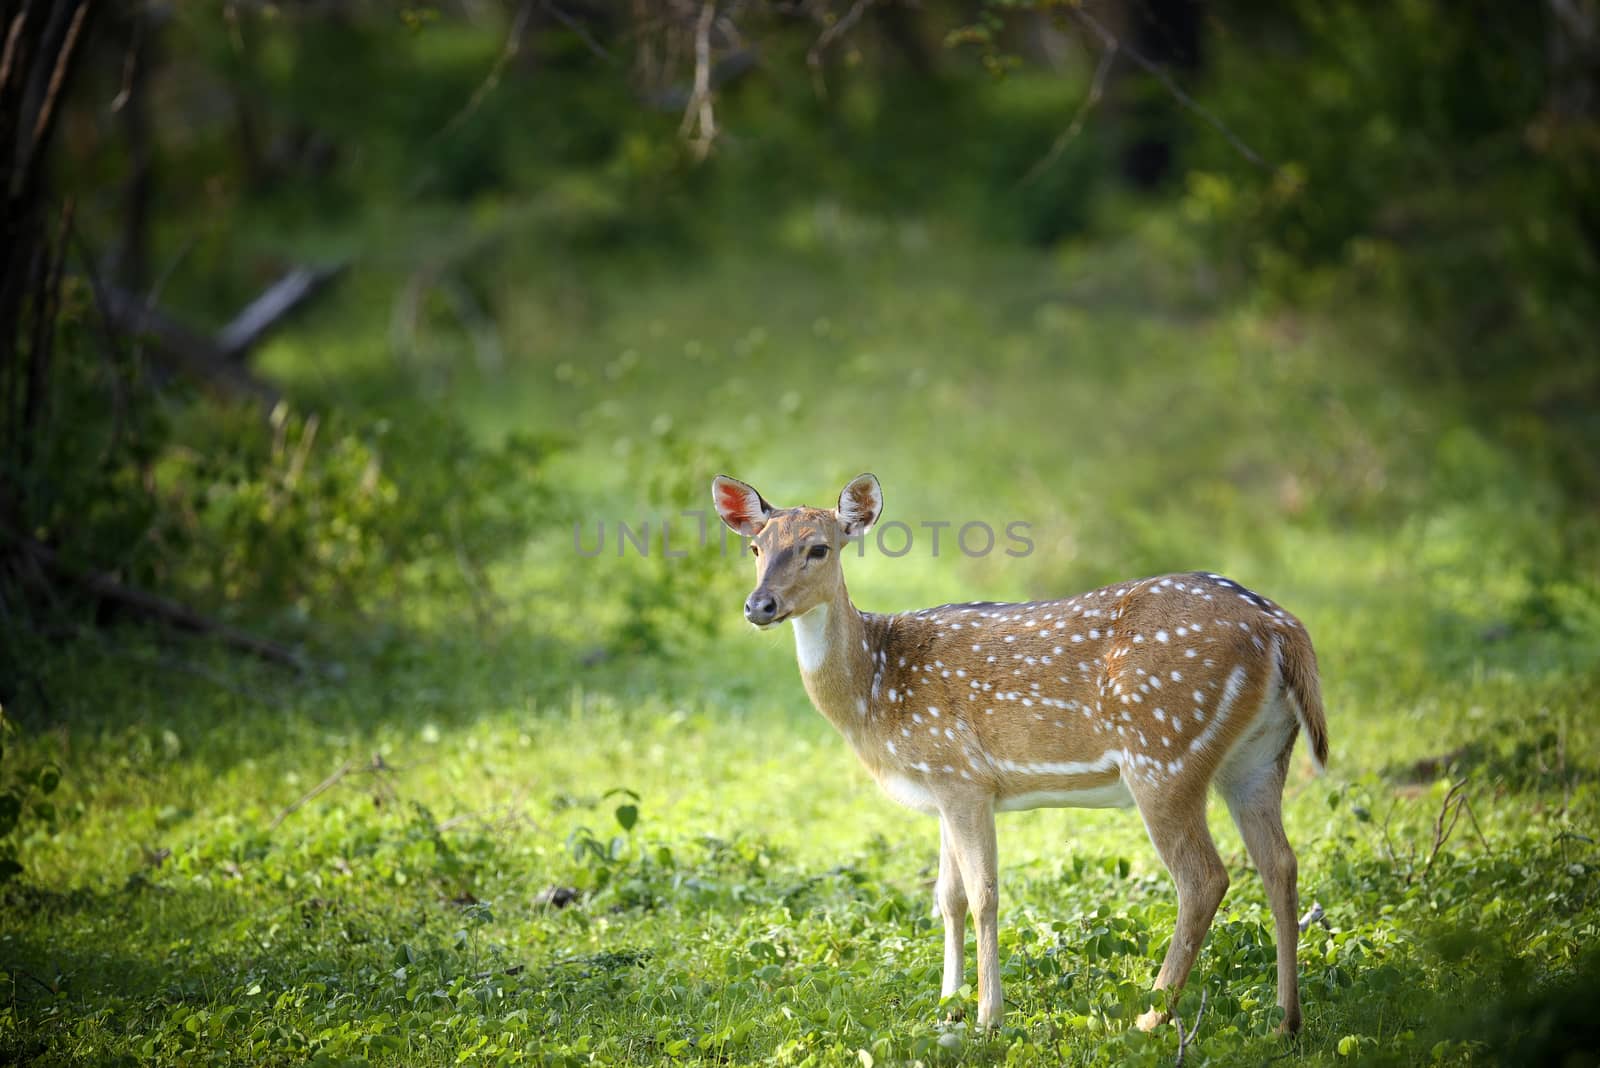 Wild Spotted deer by byrdyak